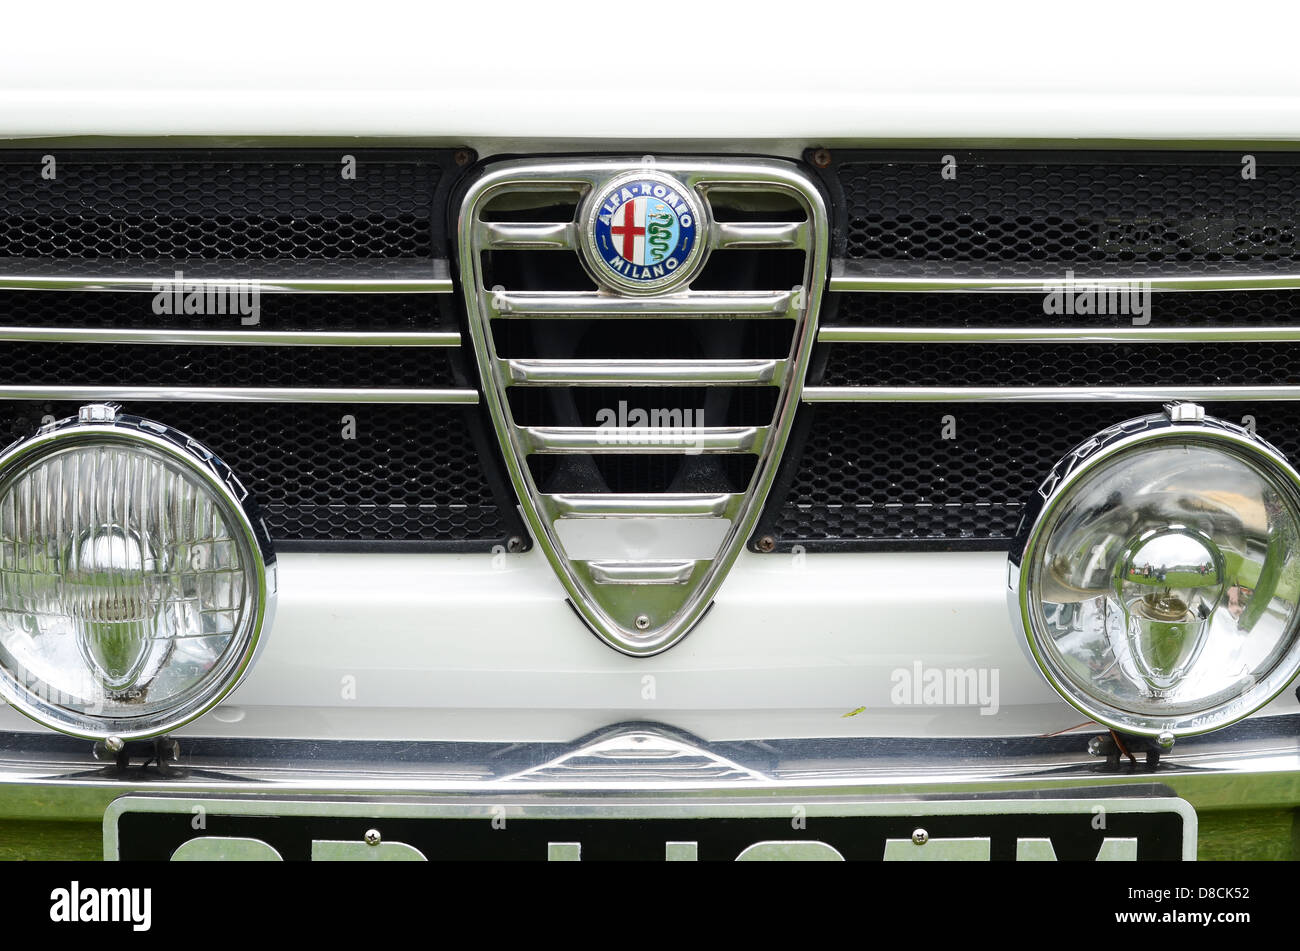 Close-up of a classic car – Alfa Romeo. Stock Photo